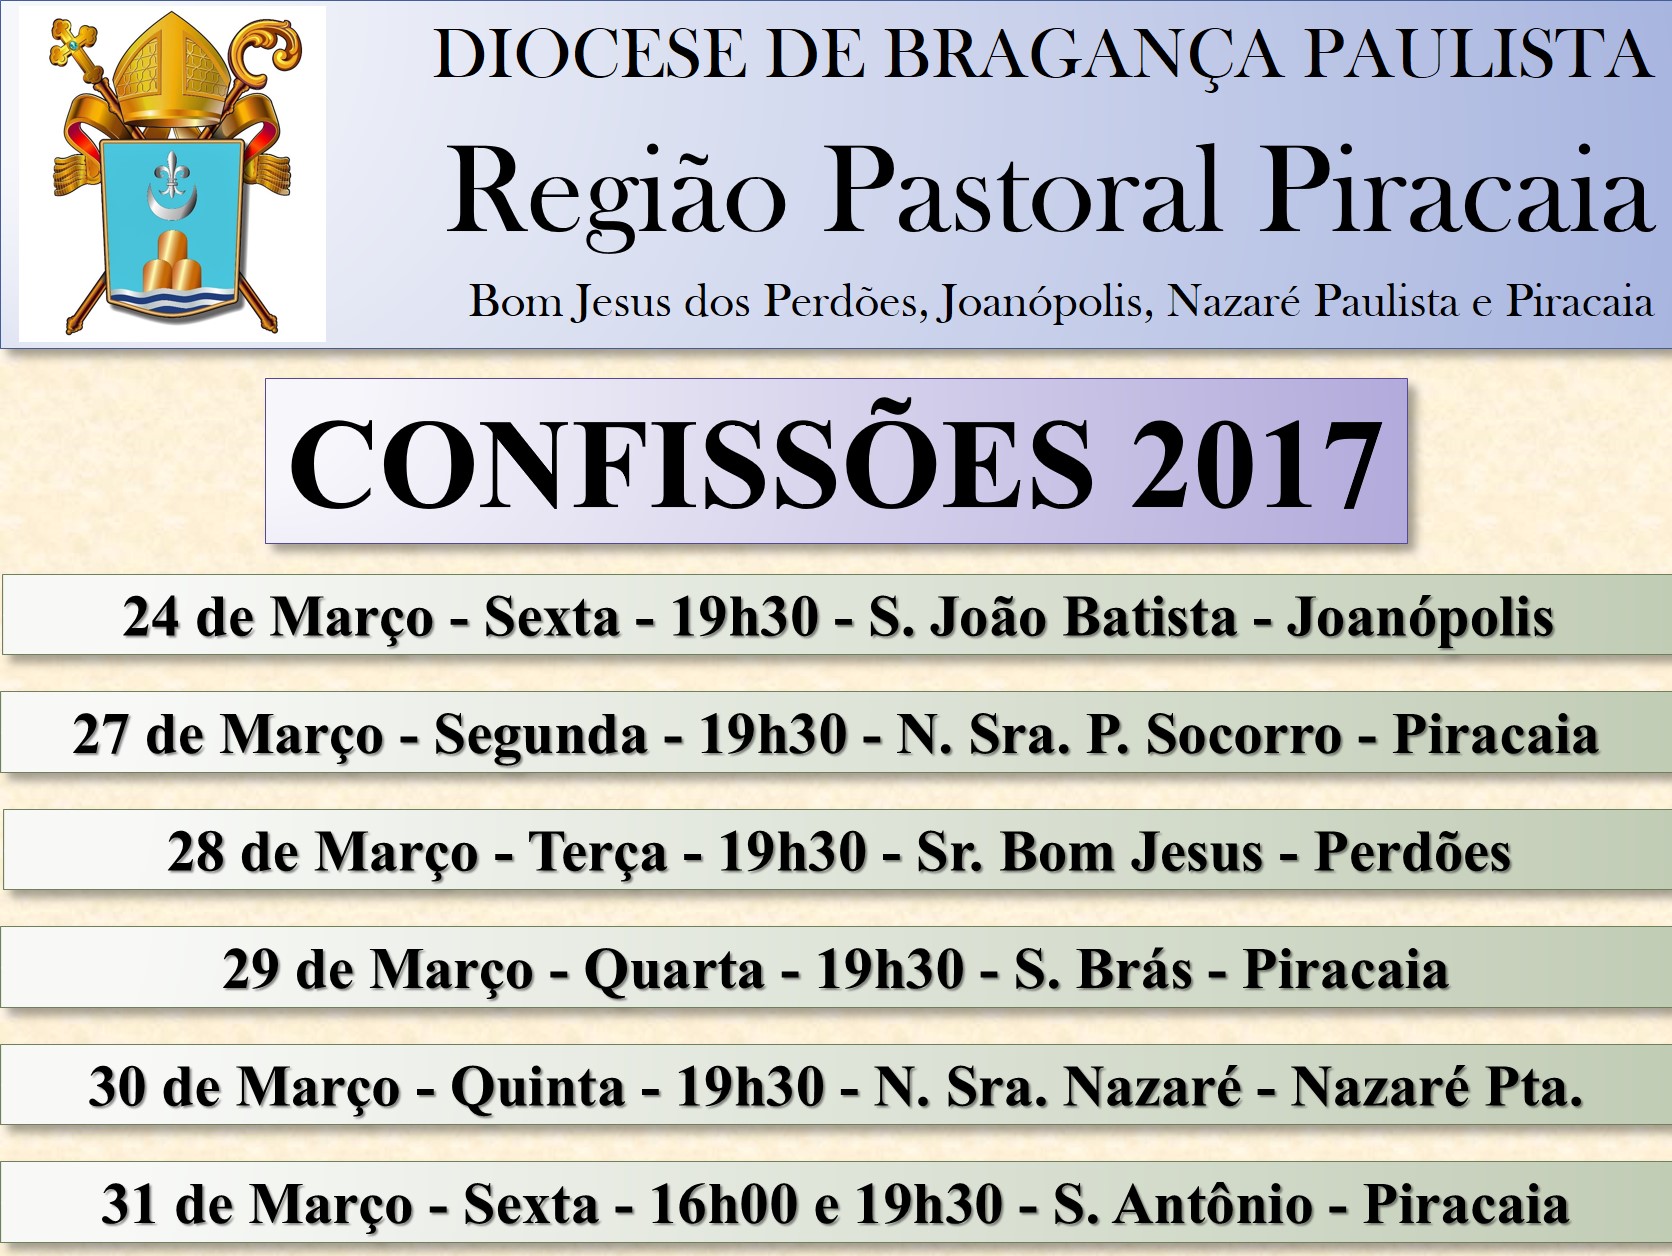 Confissão-Região Pastoral de Piracaia